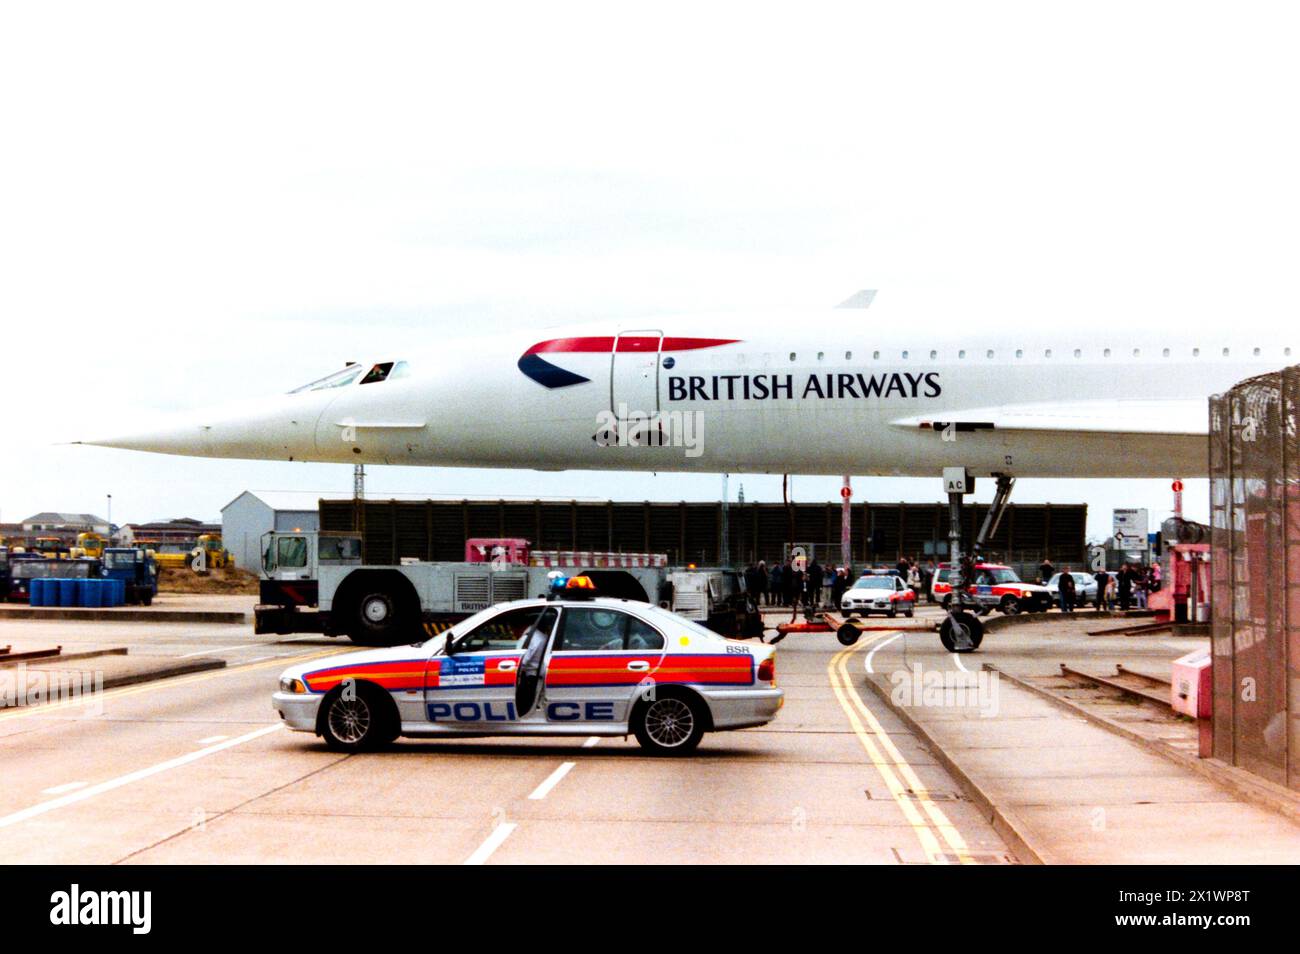 La British Airways BAC Concorde G-BOAC viene trainata attraverso Eastchurch Road all'aeroporto di Londra Heathrow, con la strada chiusa dalla polizia. La flotta di BA Concorde era parcheggiata nel loro hangar di manutenzione sul perimetro dell'aeroporto e trainata nell'area interna dell'aeroporto quando era necessario operare voli di linea. Gli appassionati si sono riuniti per vedere Concorde verso la fine del suo servizio che richiedeva una maggiore presenza della polizia. Volò per la prima volta come G-BOAC nel 1975. Consegnato alla British Airways nel 1976. Volò a Manchester per la conservazione e l'esposizione il 31 ottobre 2003 Foto Stock